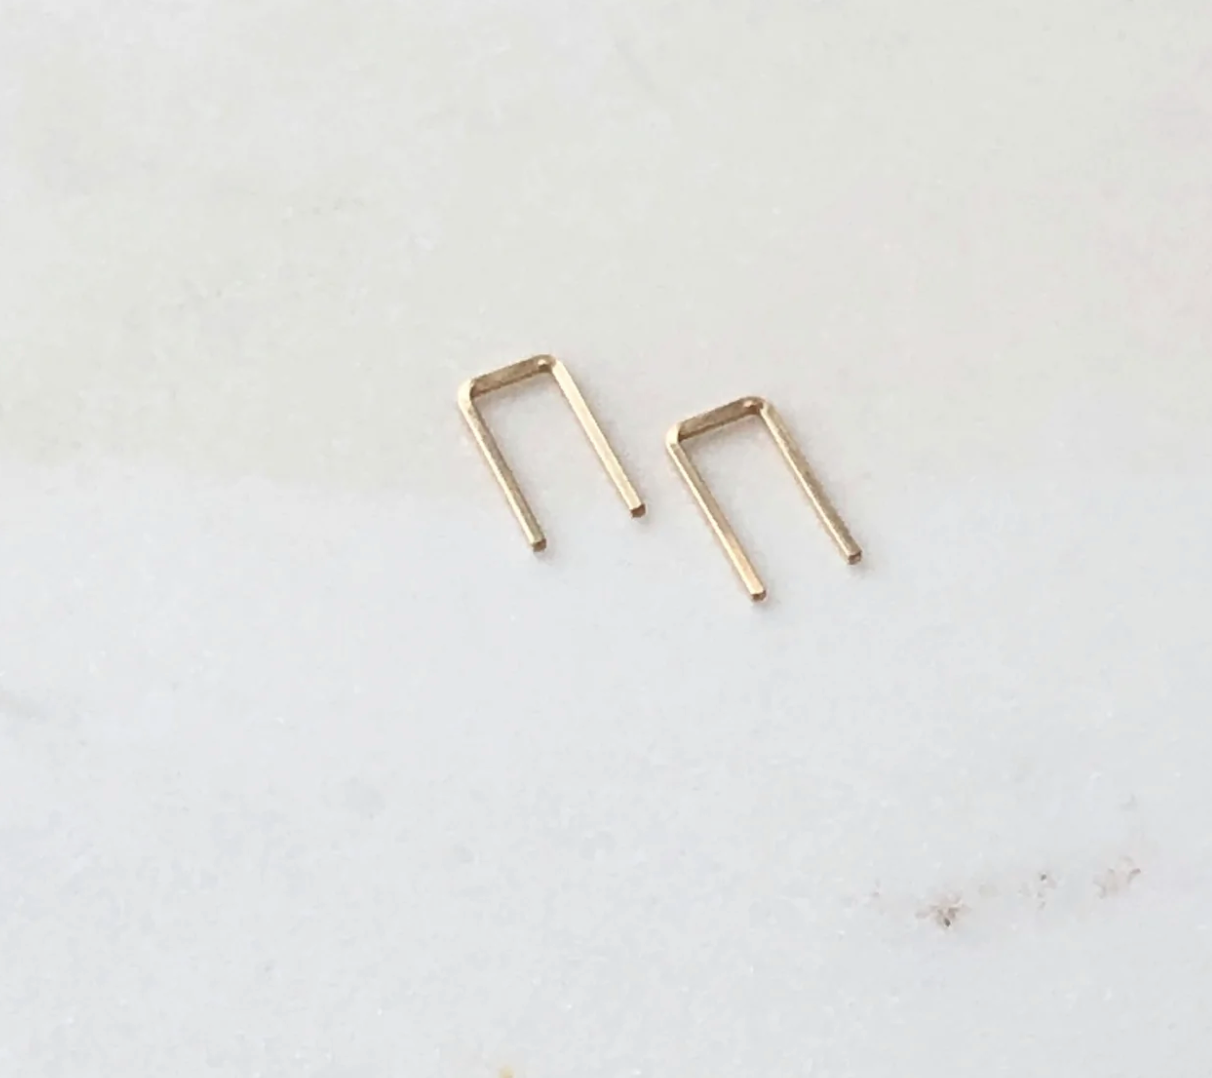 Mini Staple Earrings - 14K Gold Filled